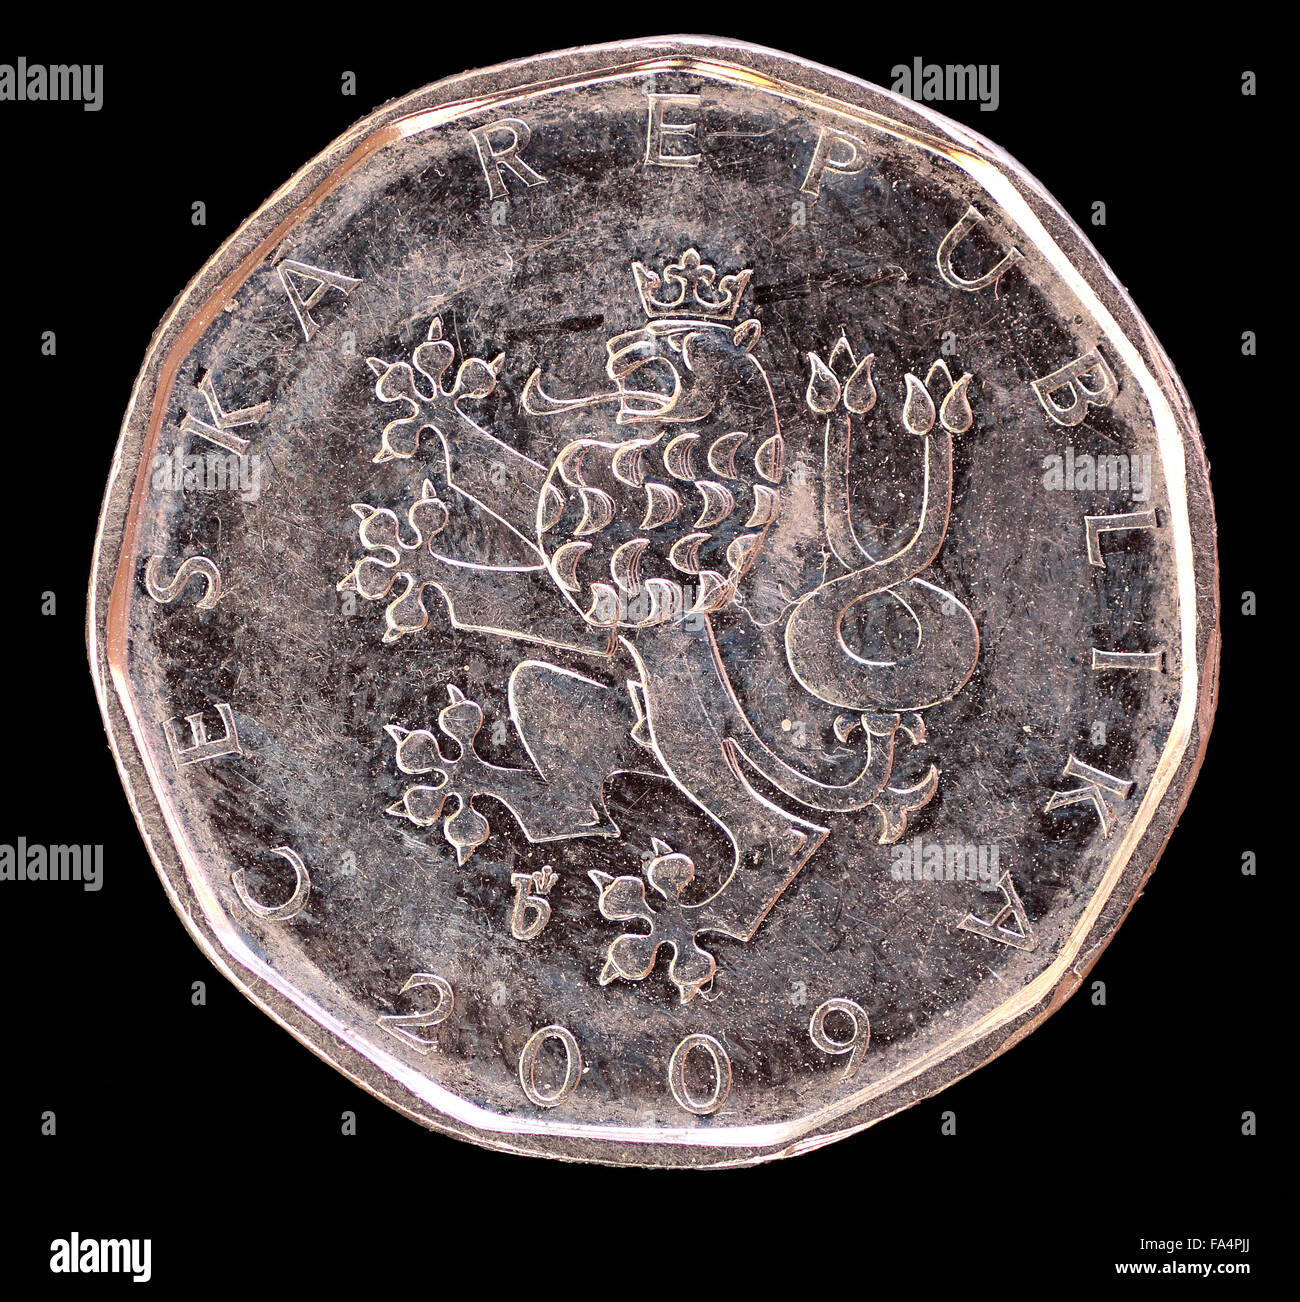 Der Kopf Gesicht 2 Kronen Münze, ausgestellt durch die Tschechische Republik im Jahr 2009, der Löwe, Symbol des Landes darstellt. Bild auf b isoliert Stockfoto